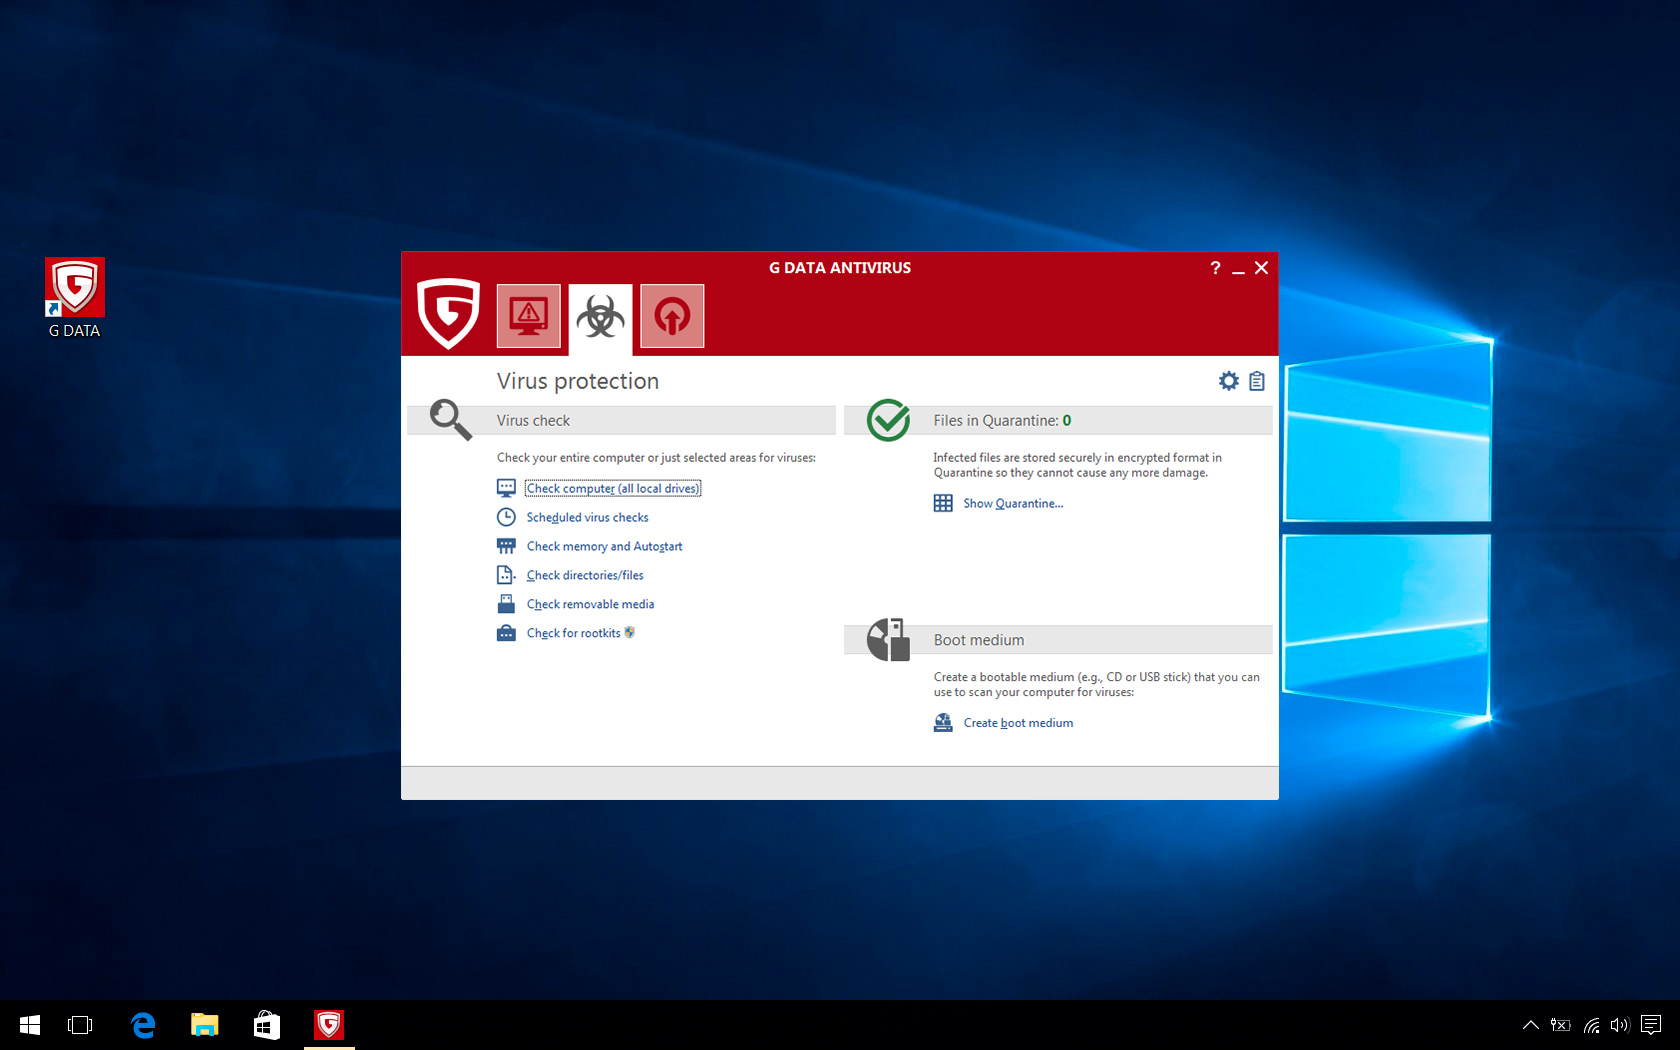 Windows 8 G DATA Antivirus full